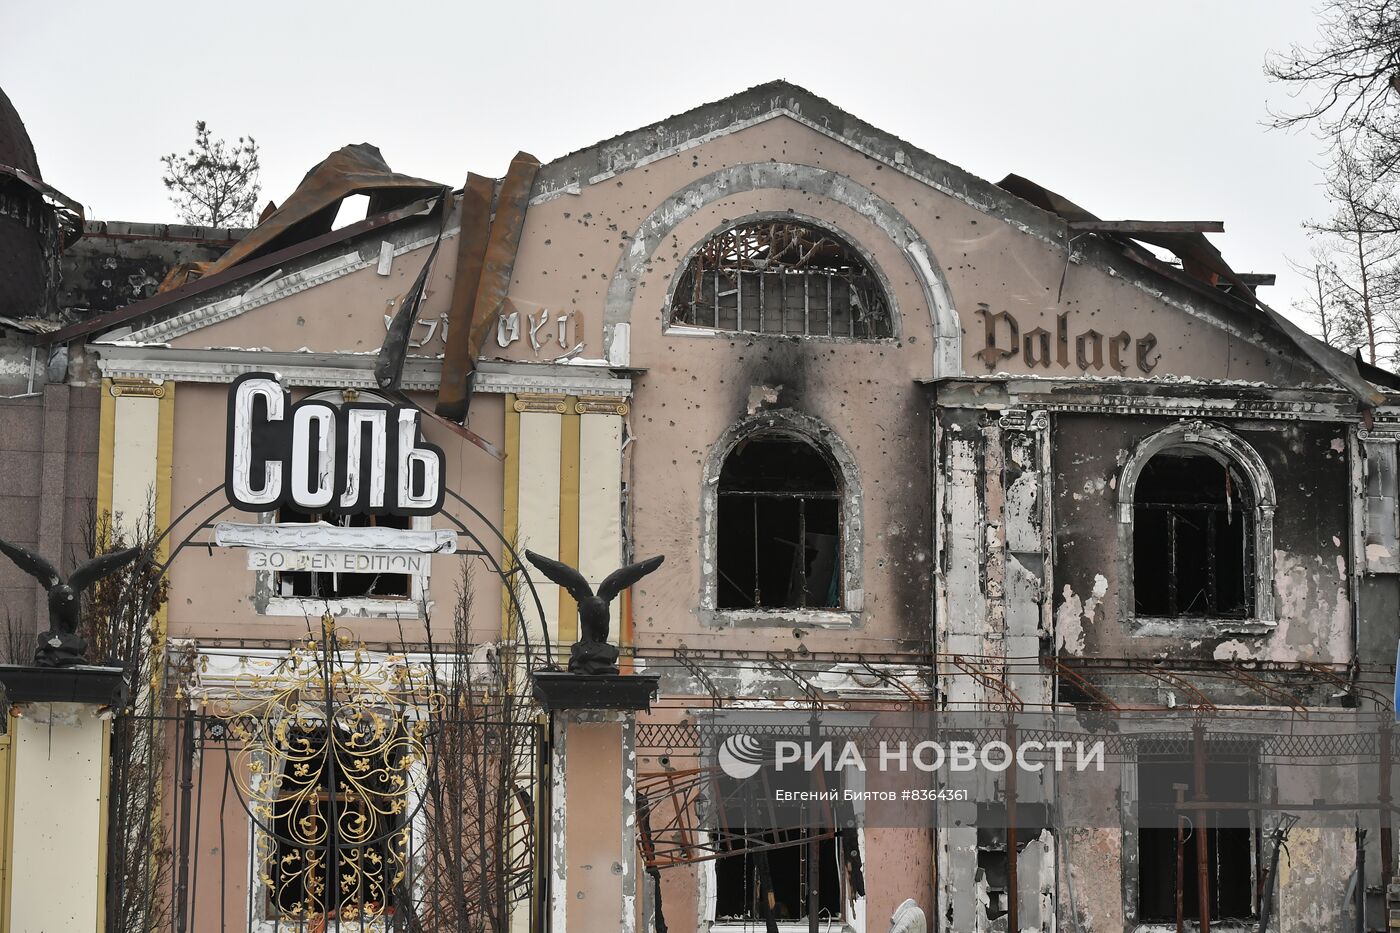 Разрушения в Северодонецке в ЛНР